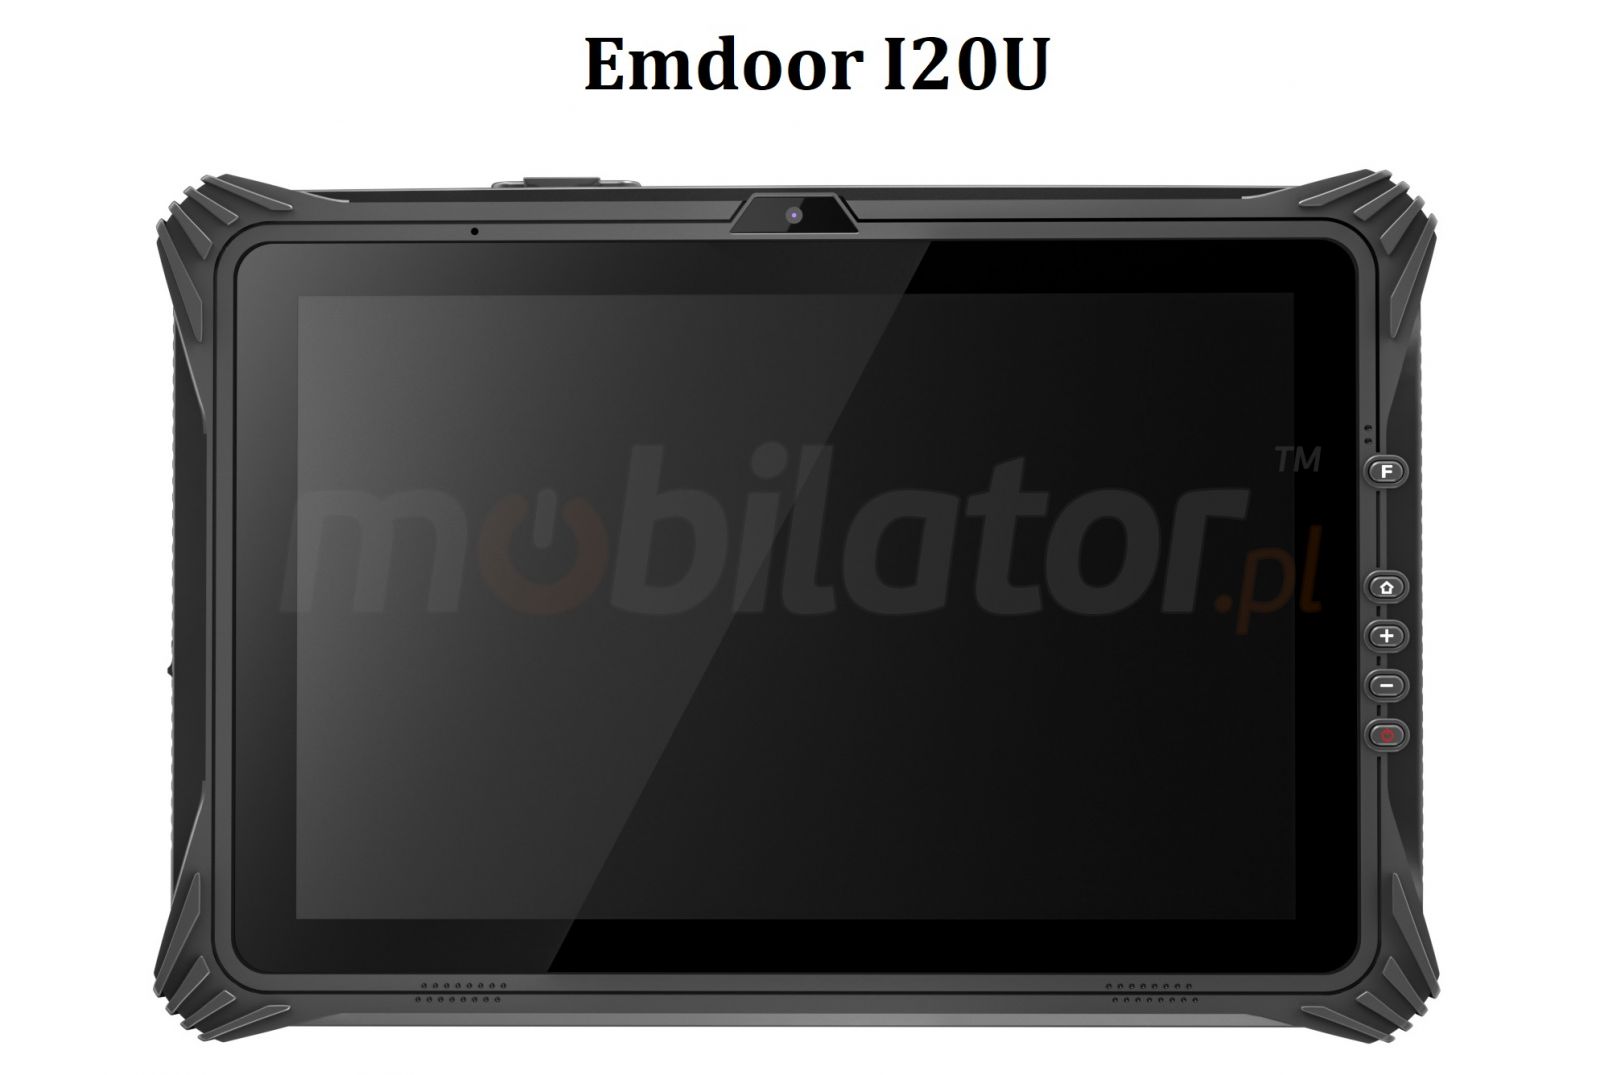 Emdoor I20U v.4 - Odporny na upadki dwunastocalowy tablet z Windows 10 Home, Bluetooth 4.2, 8GB RAM, dyskiem 128GB, NFC  i 4G 